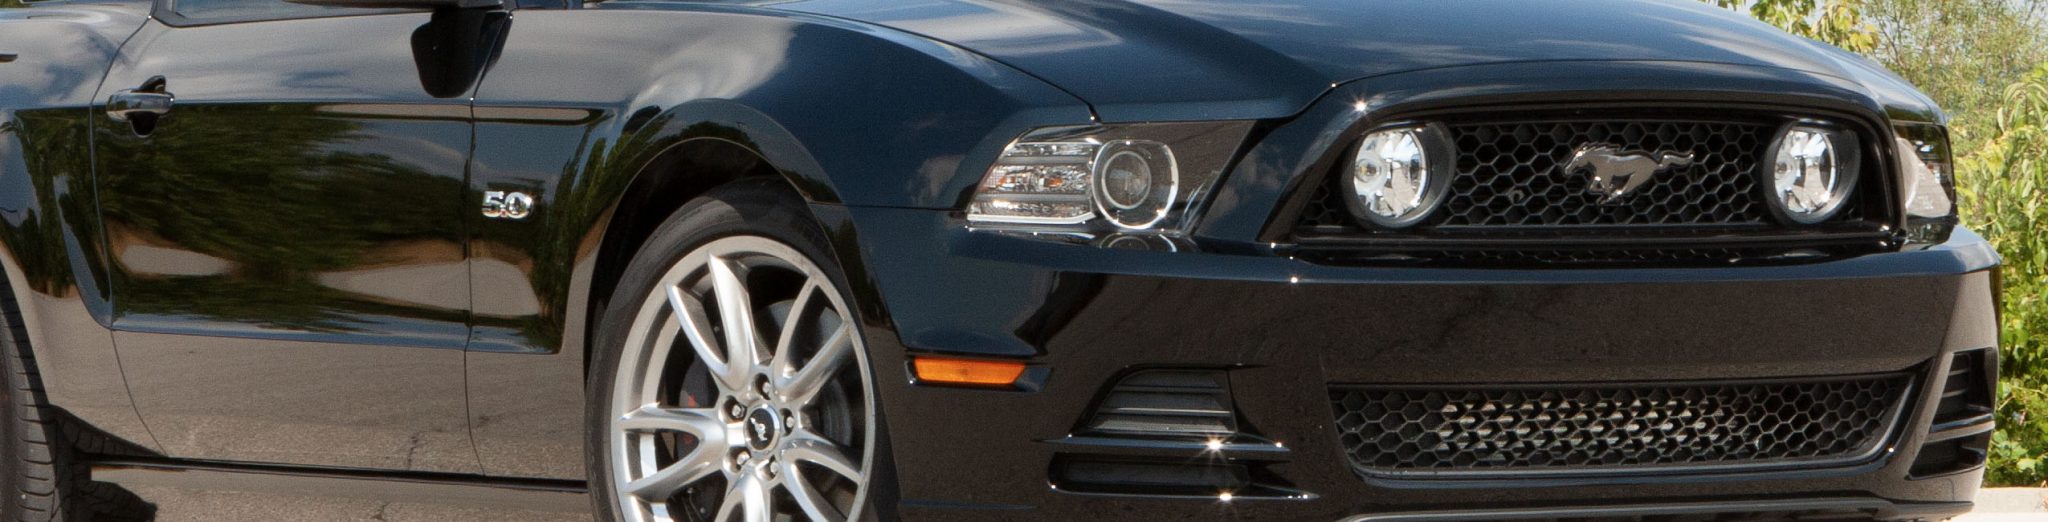 2011 - 14 Mustang GT (5.0 4V)